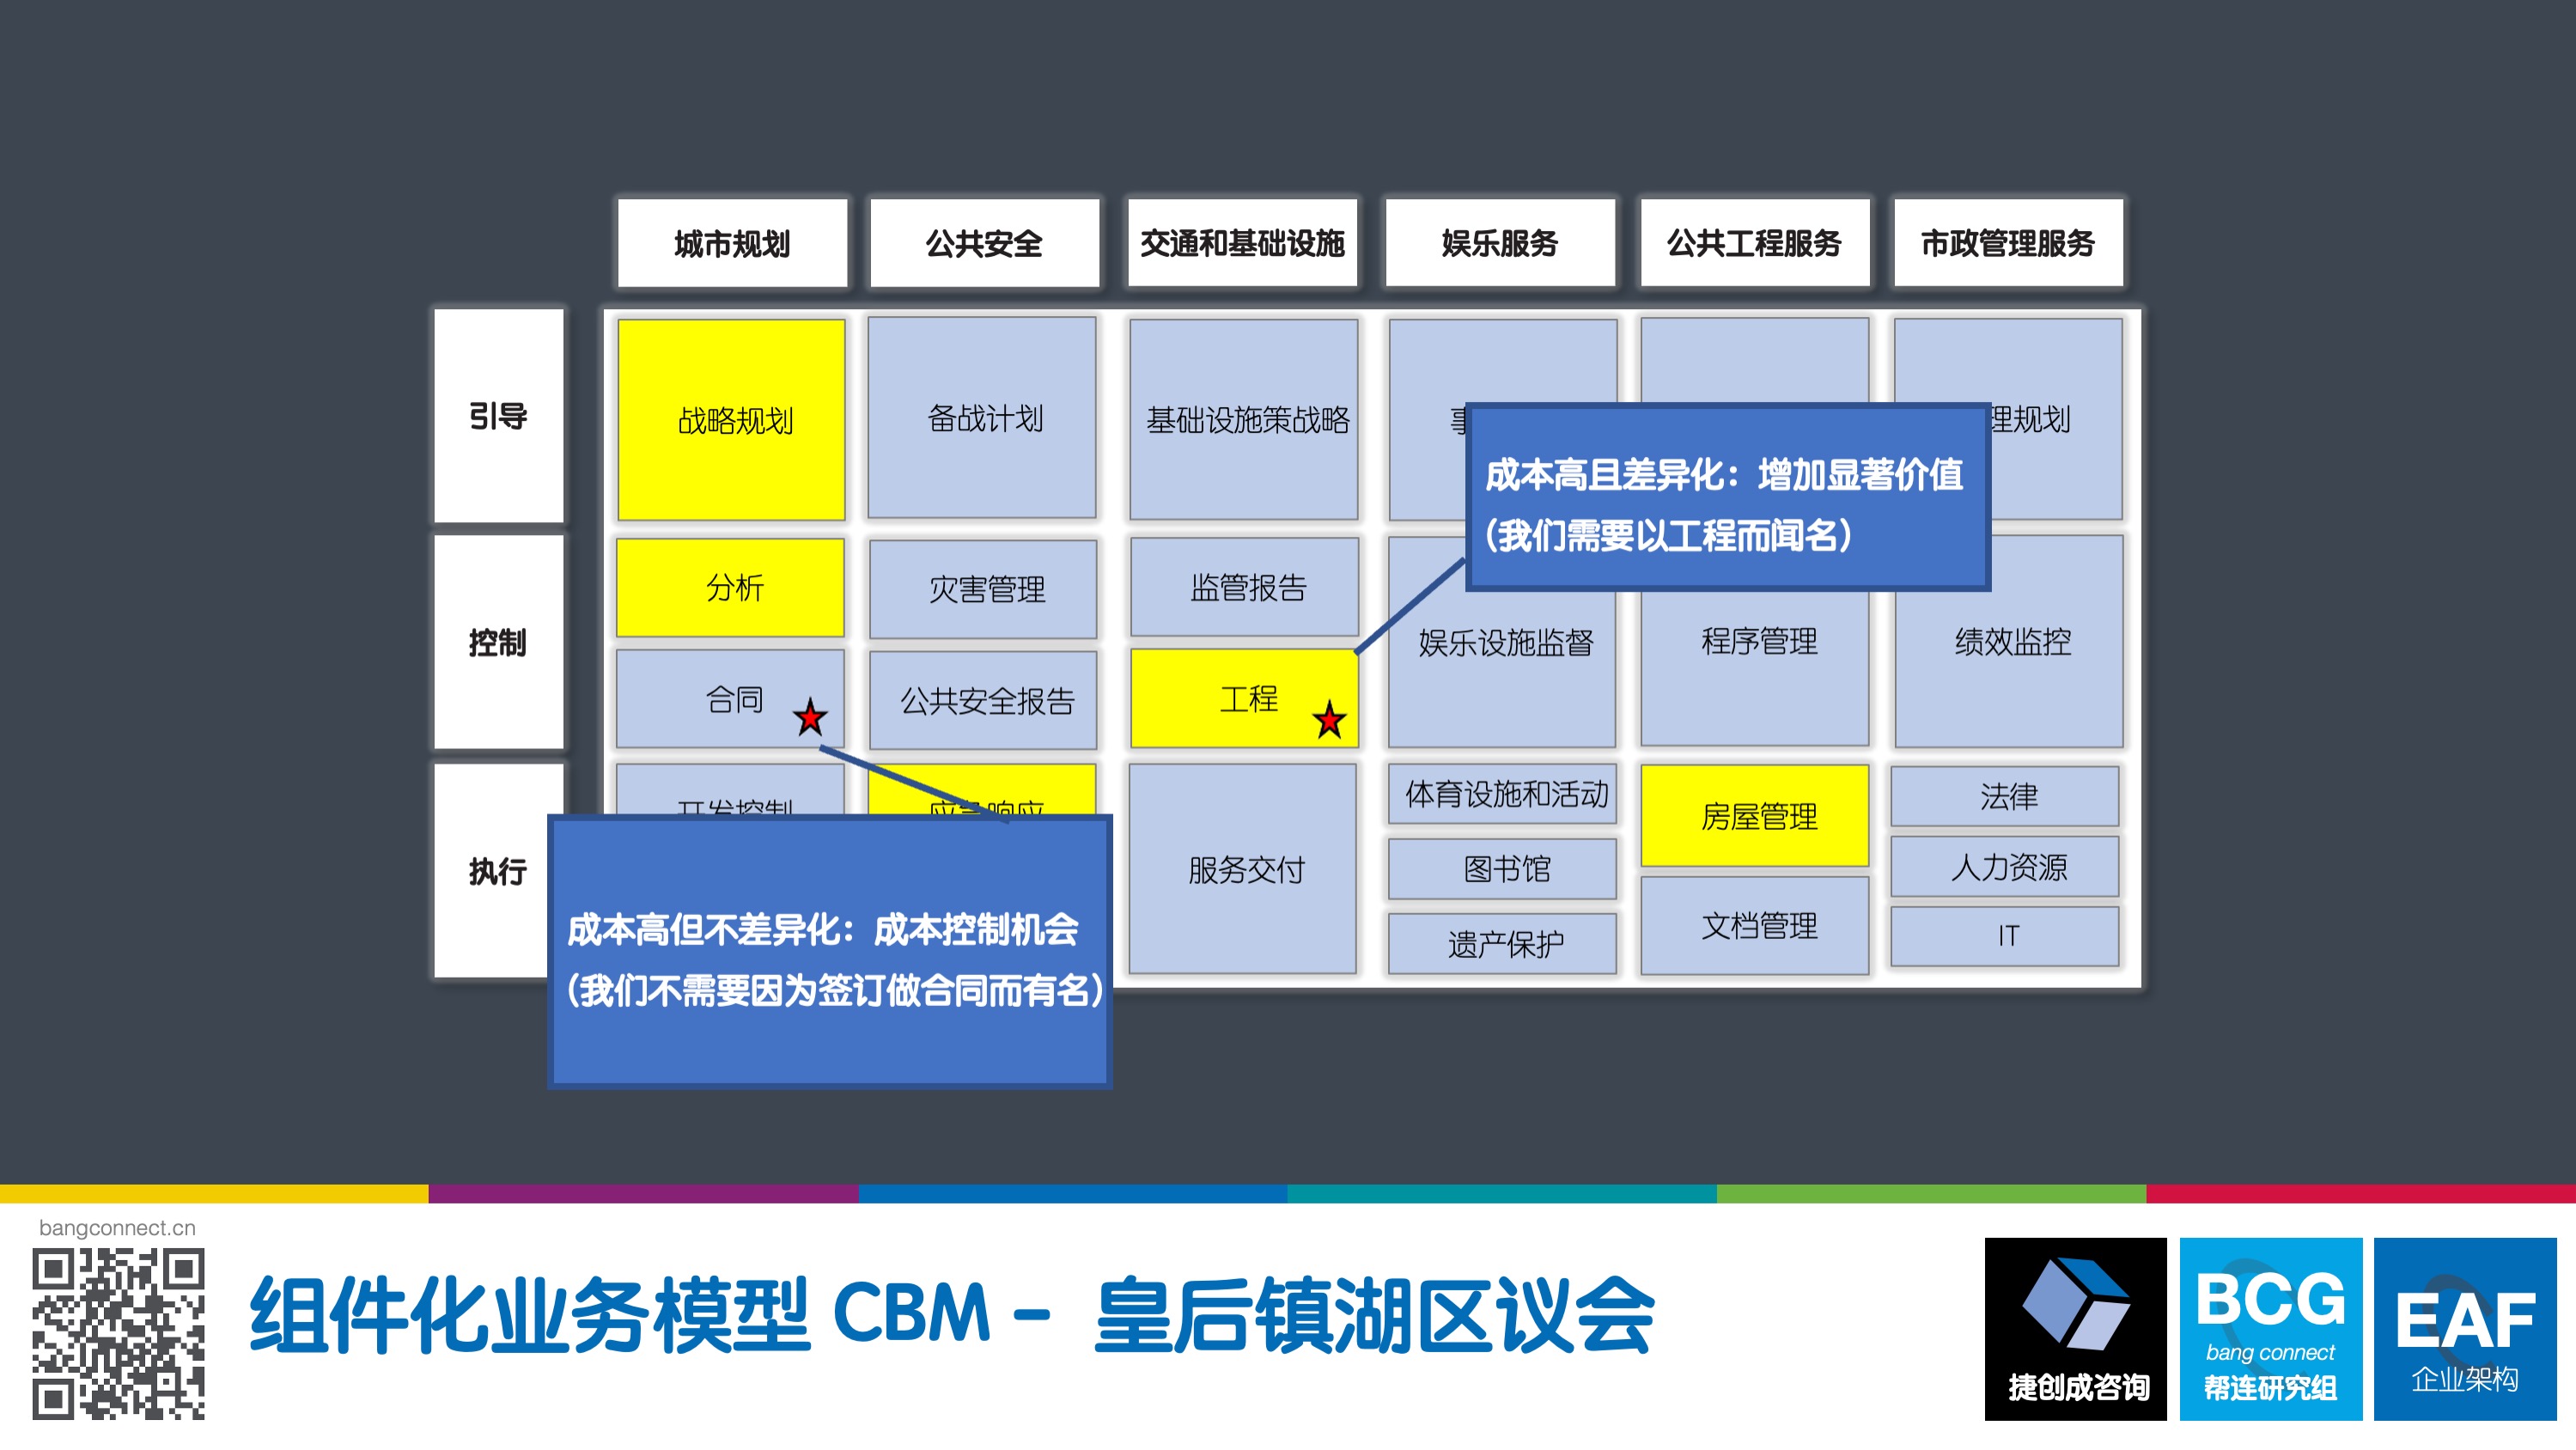 组件化业务模型 CBM-皇后镇湖区议会